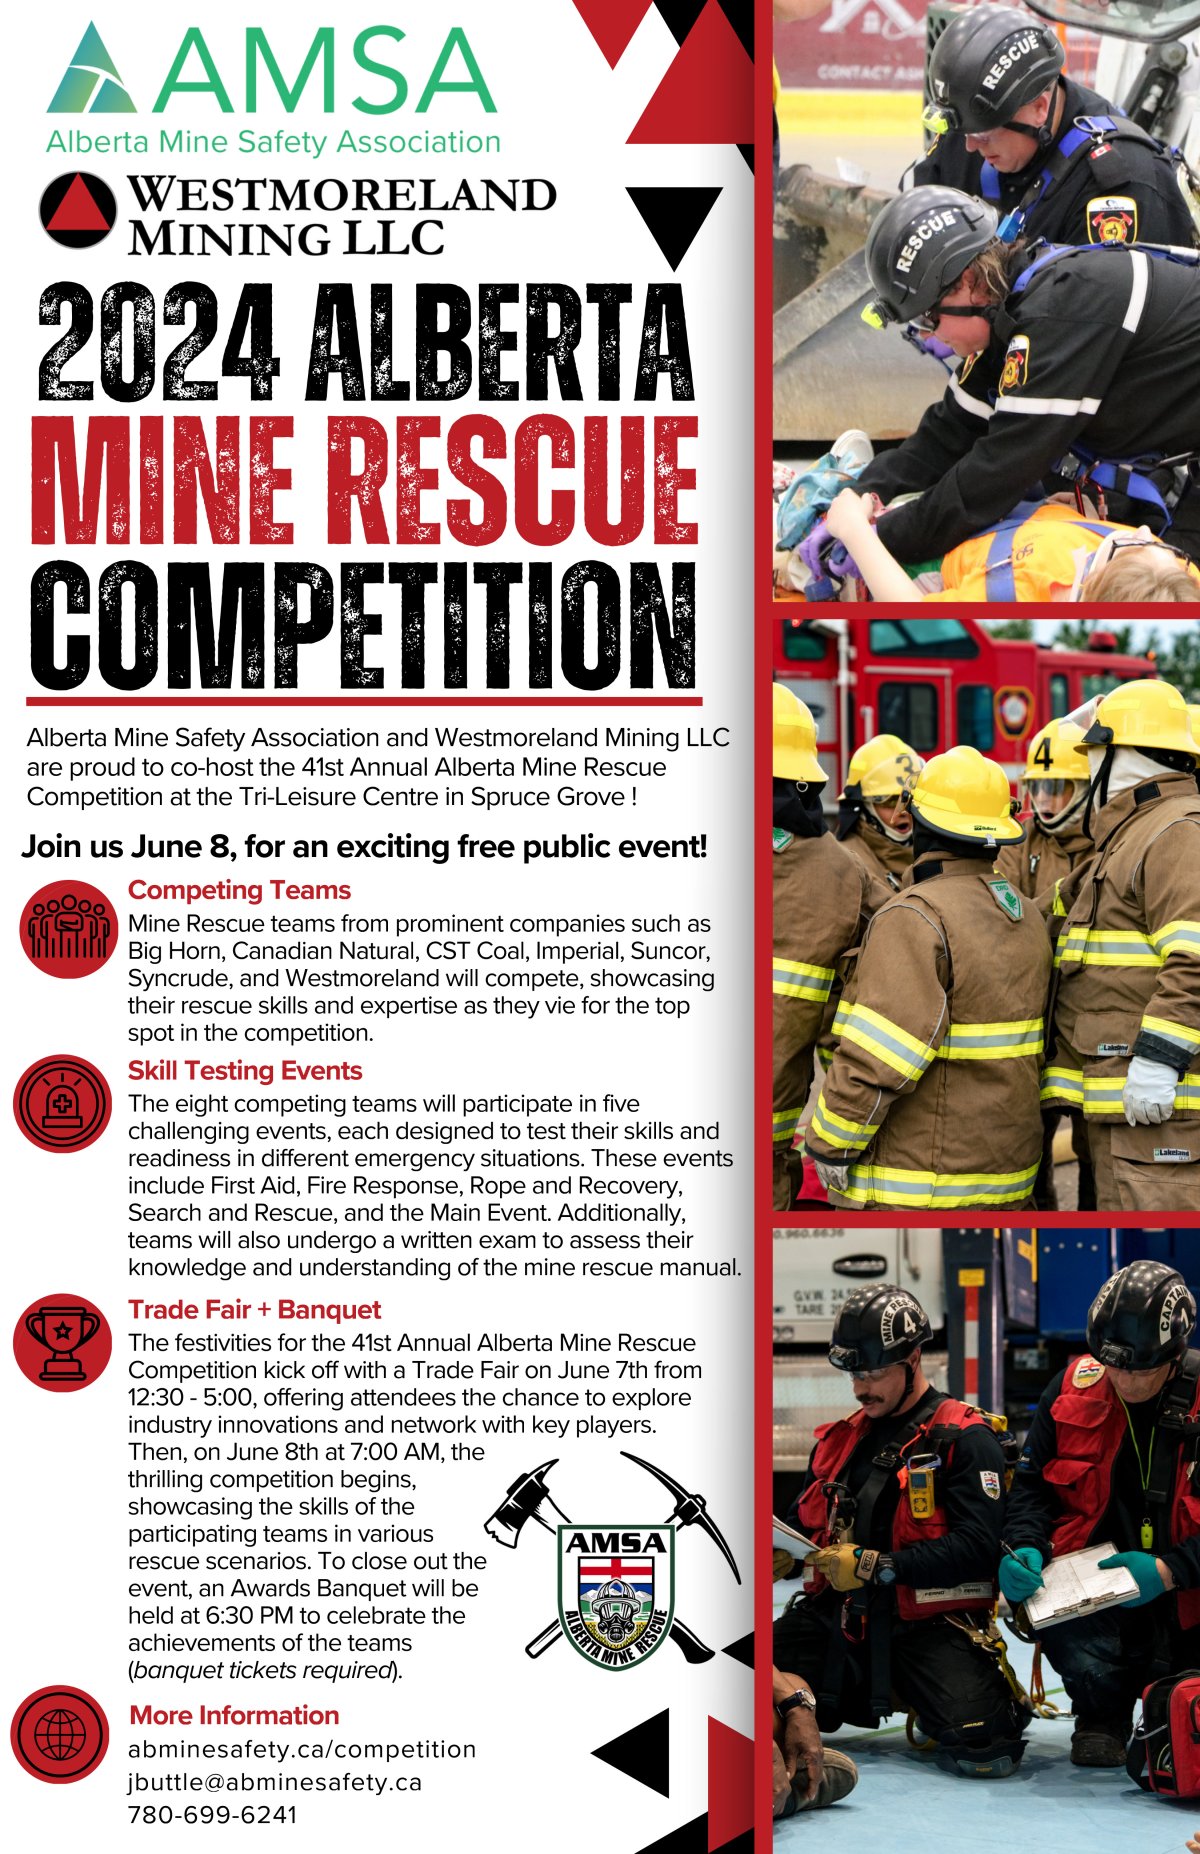 AMSA 41st Annual Mine Rescue Competition - image